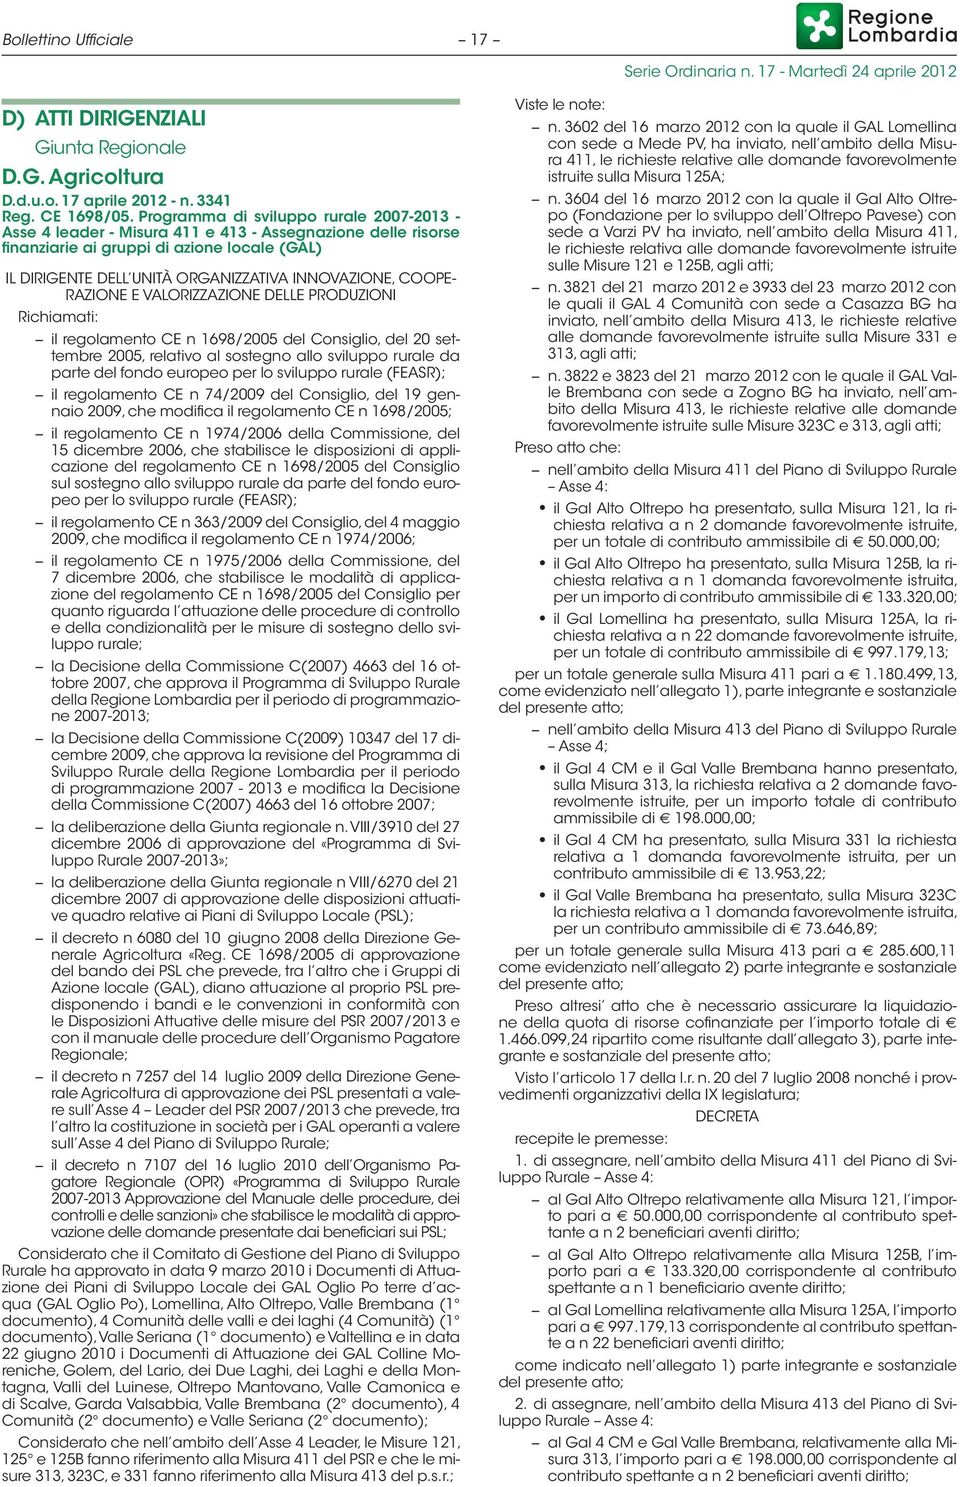 COOPE- RAZIONE E VALORIZZAZIONE DELLE PRODUZIONI Richiamati: il regolamento CE n 1698/2005 del Consiglio, del 20 settembre 2005, relativo al sostegno allo sviluppo rurale da parte del fondo europeo